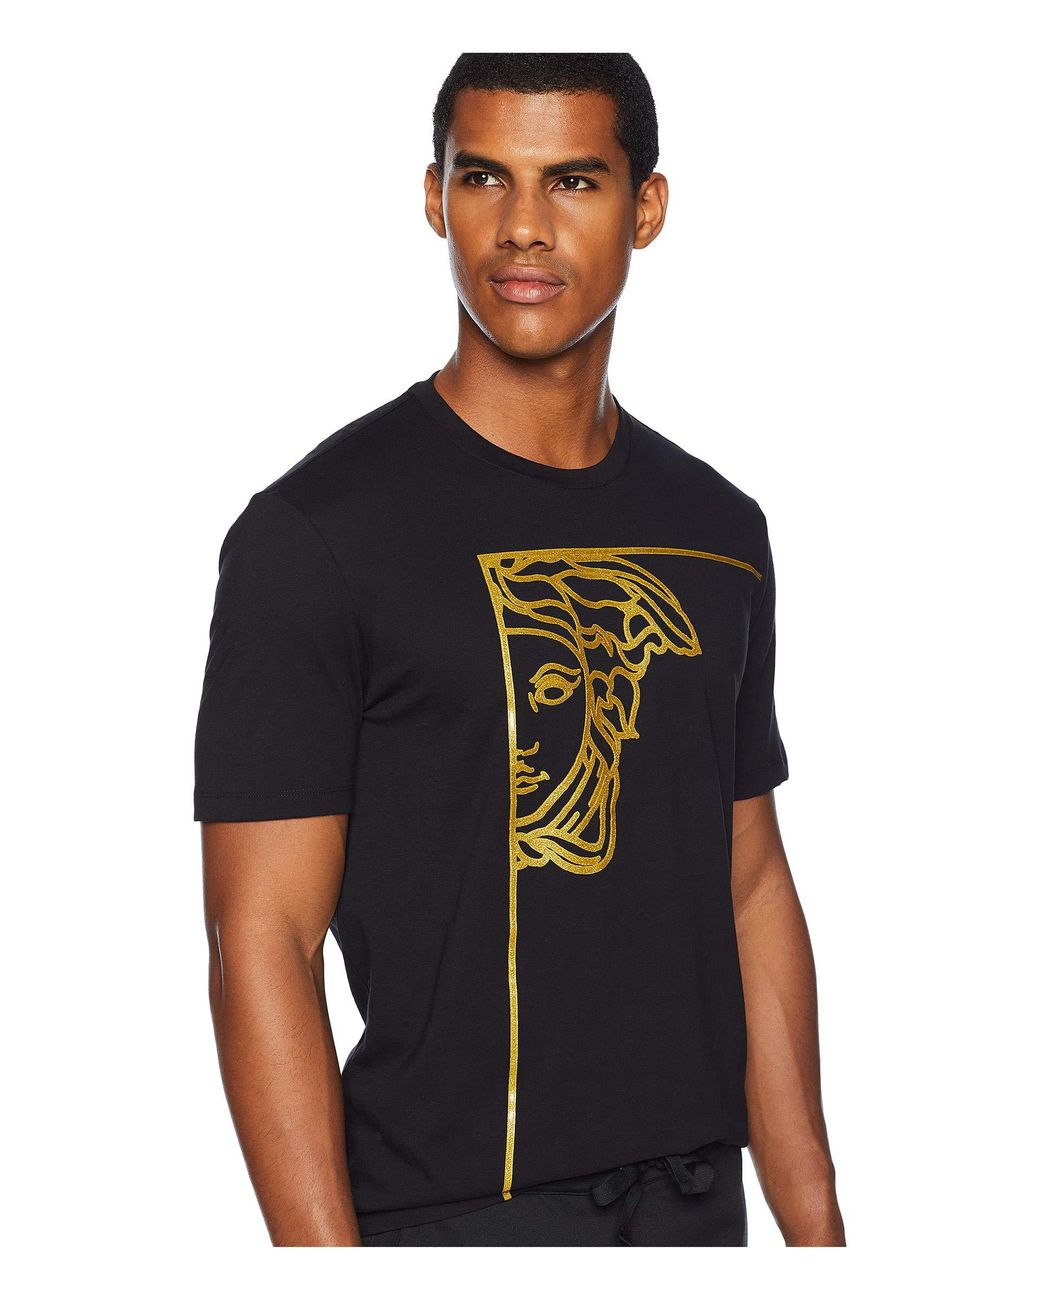 Versace Men's Beaded Medusa T-Shirt, Black, Men's, Large